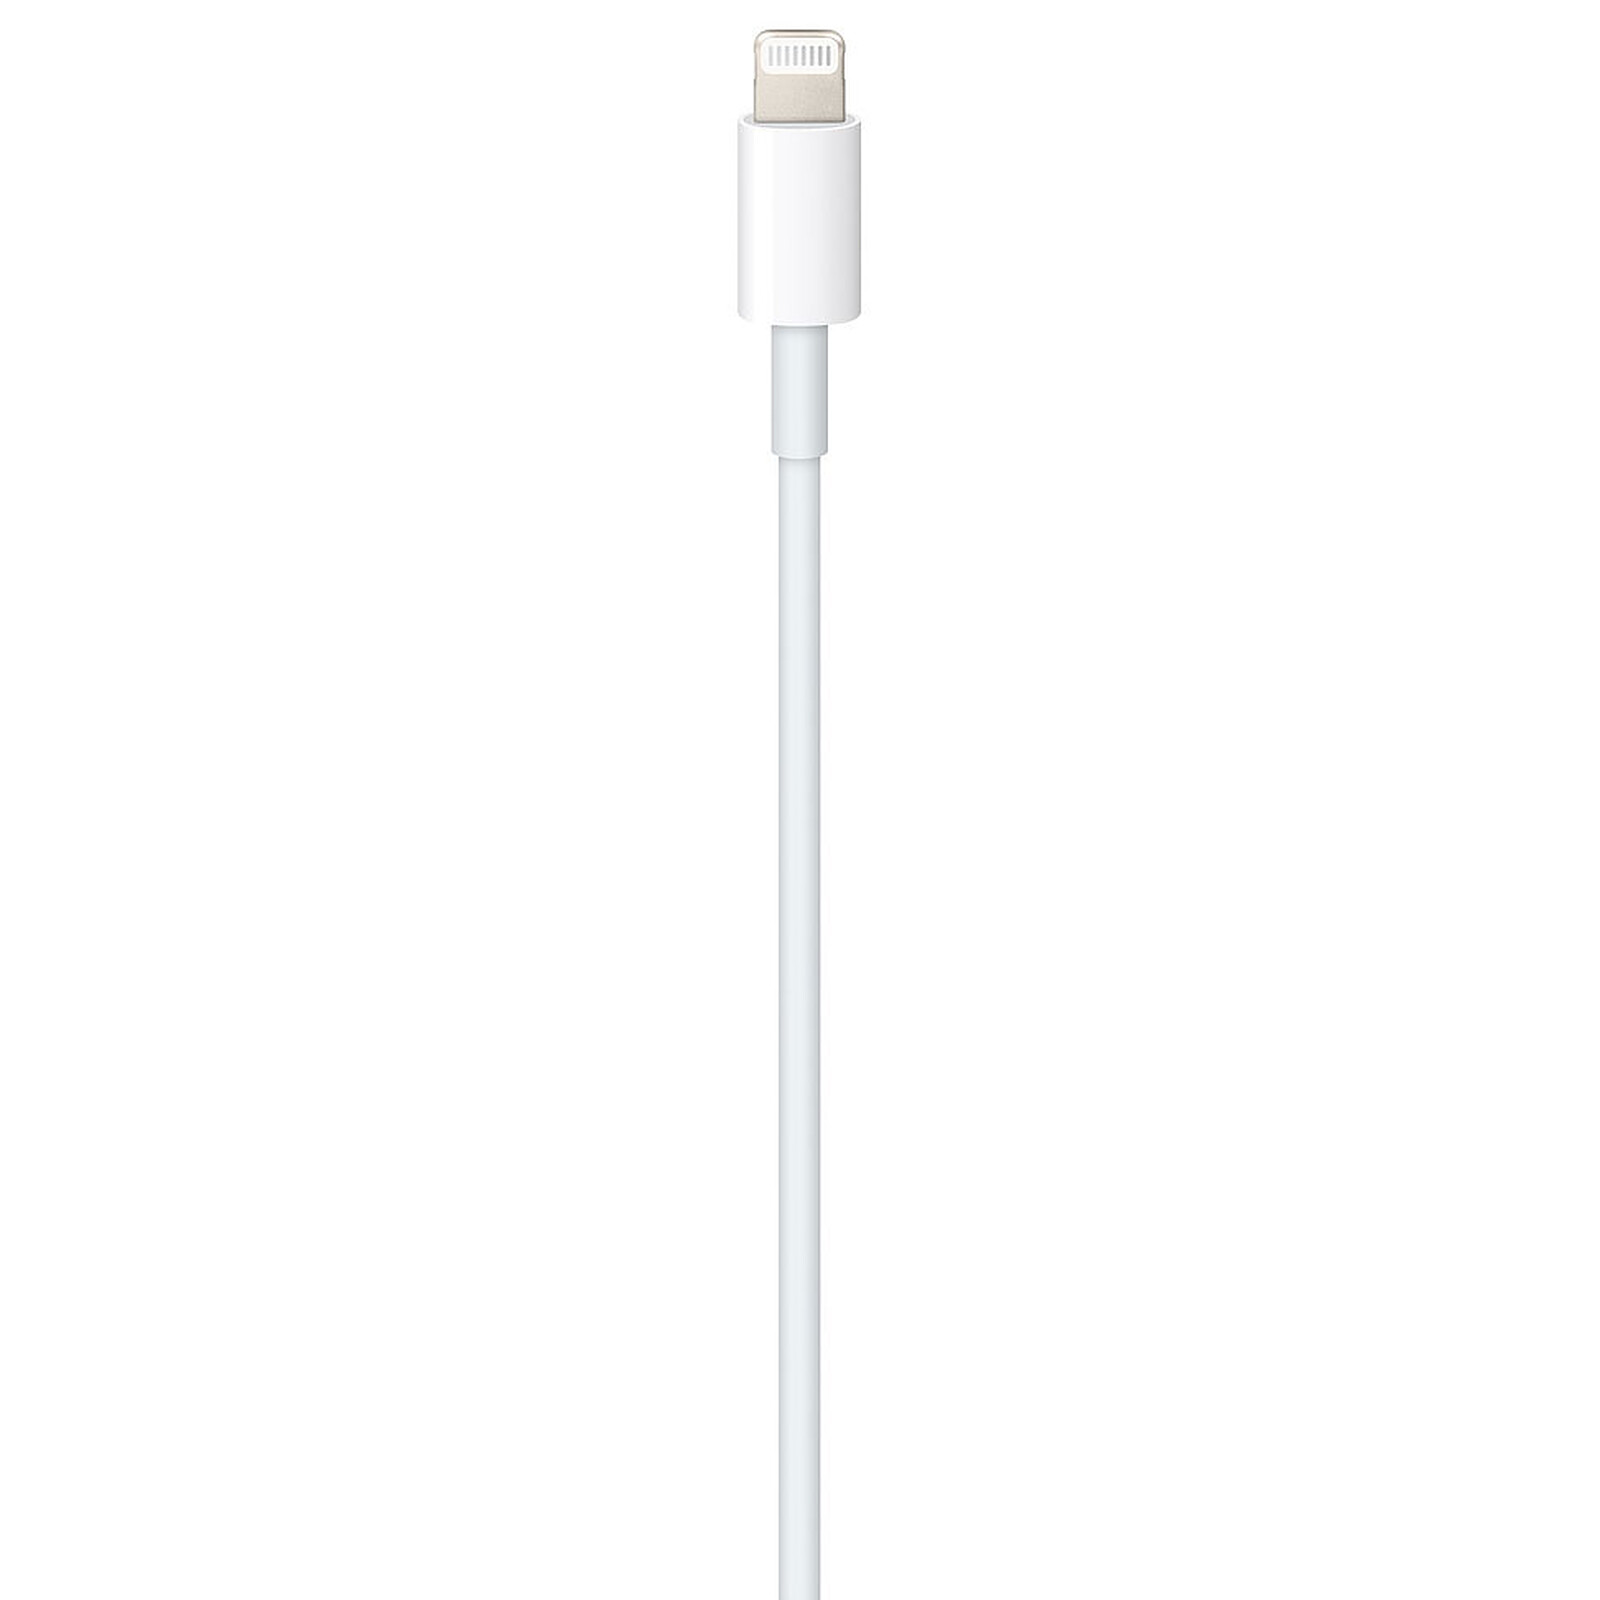 Cable USB pour iPhone, iPad et iPod - Accessoires